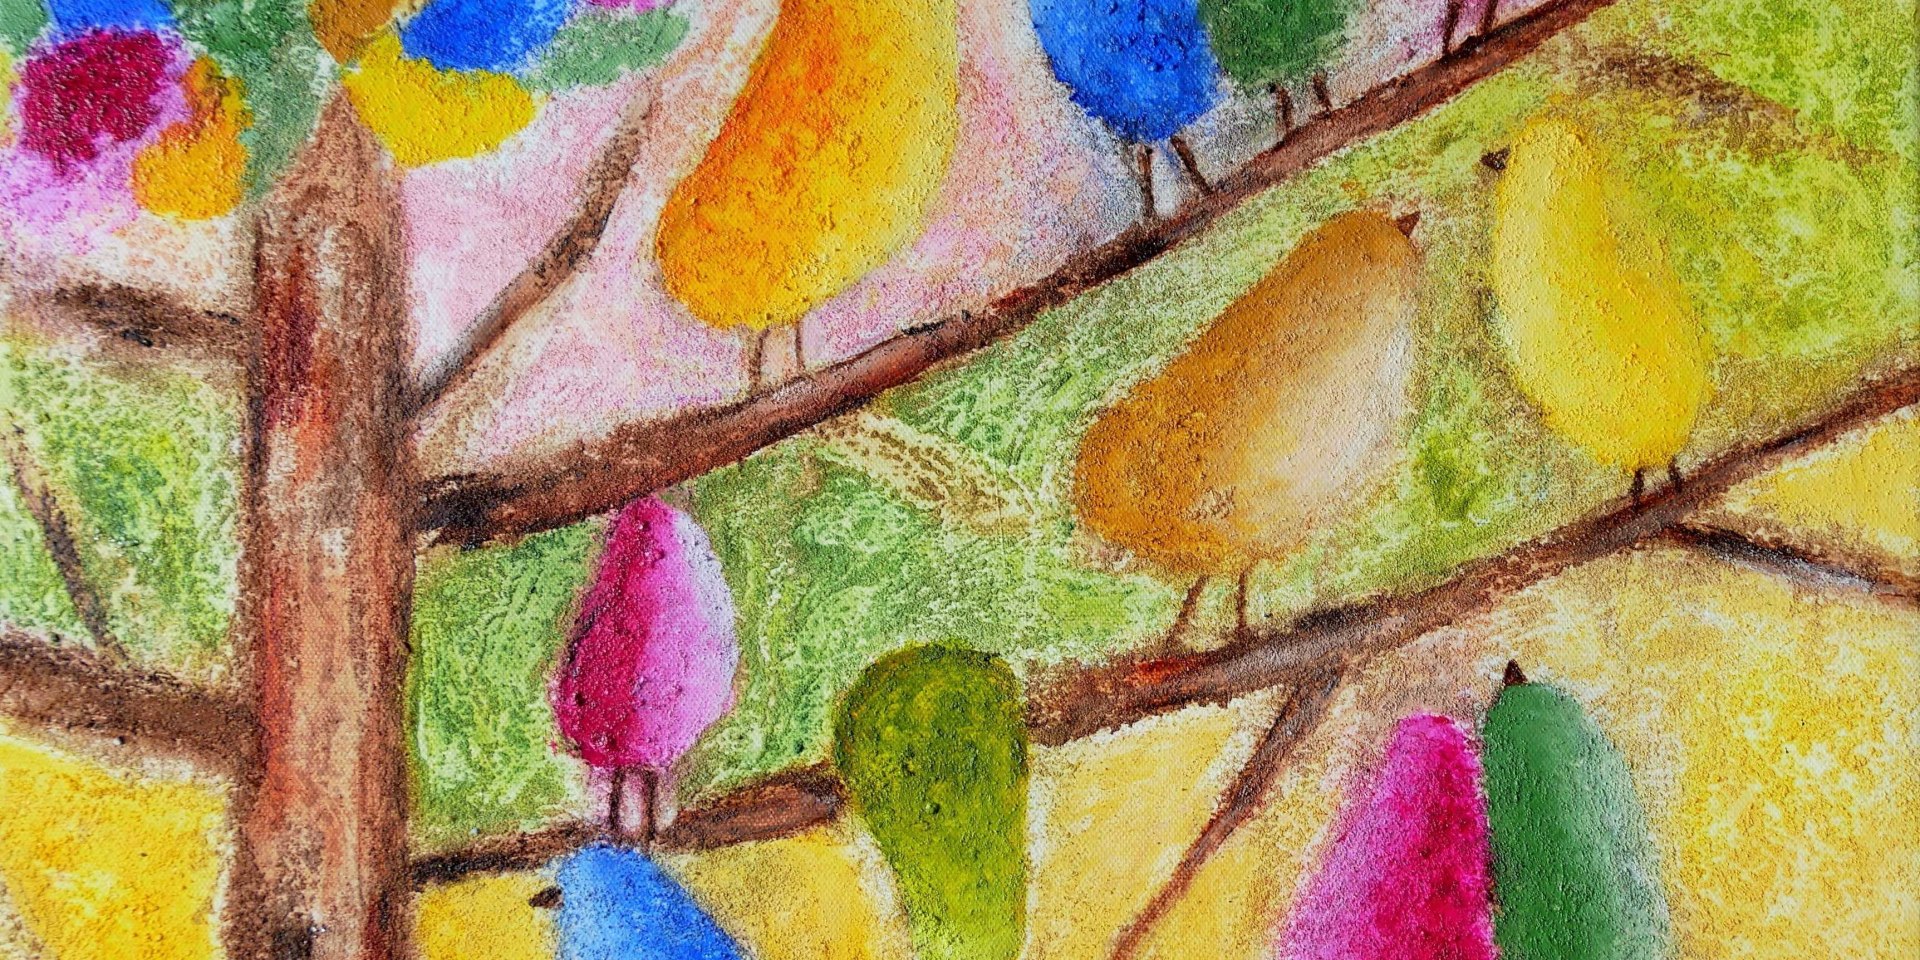 Der Lebensbaum“ nennt sich dieses farbenfrohe Bild mit den quirligen Vögeln., © kuh.gallery